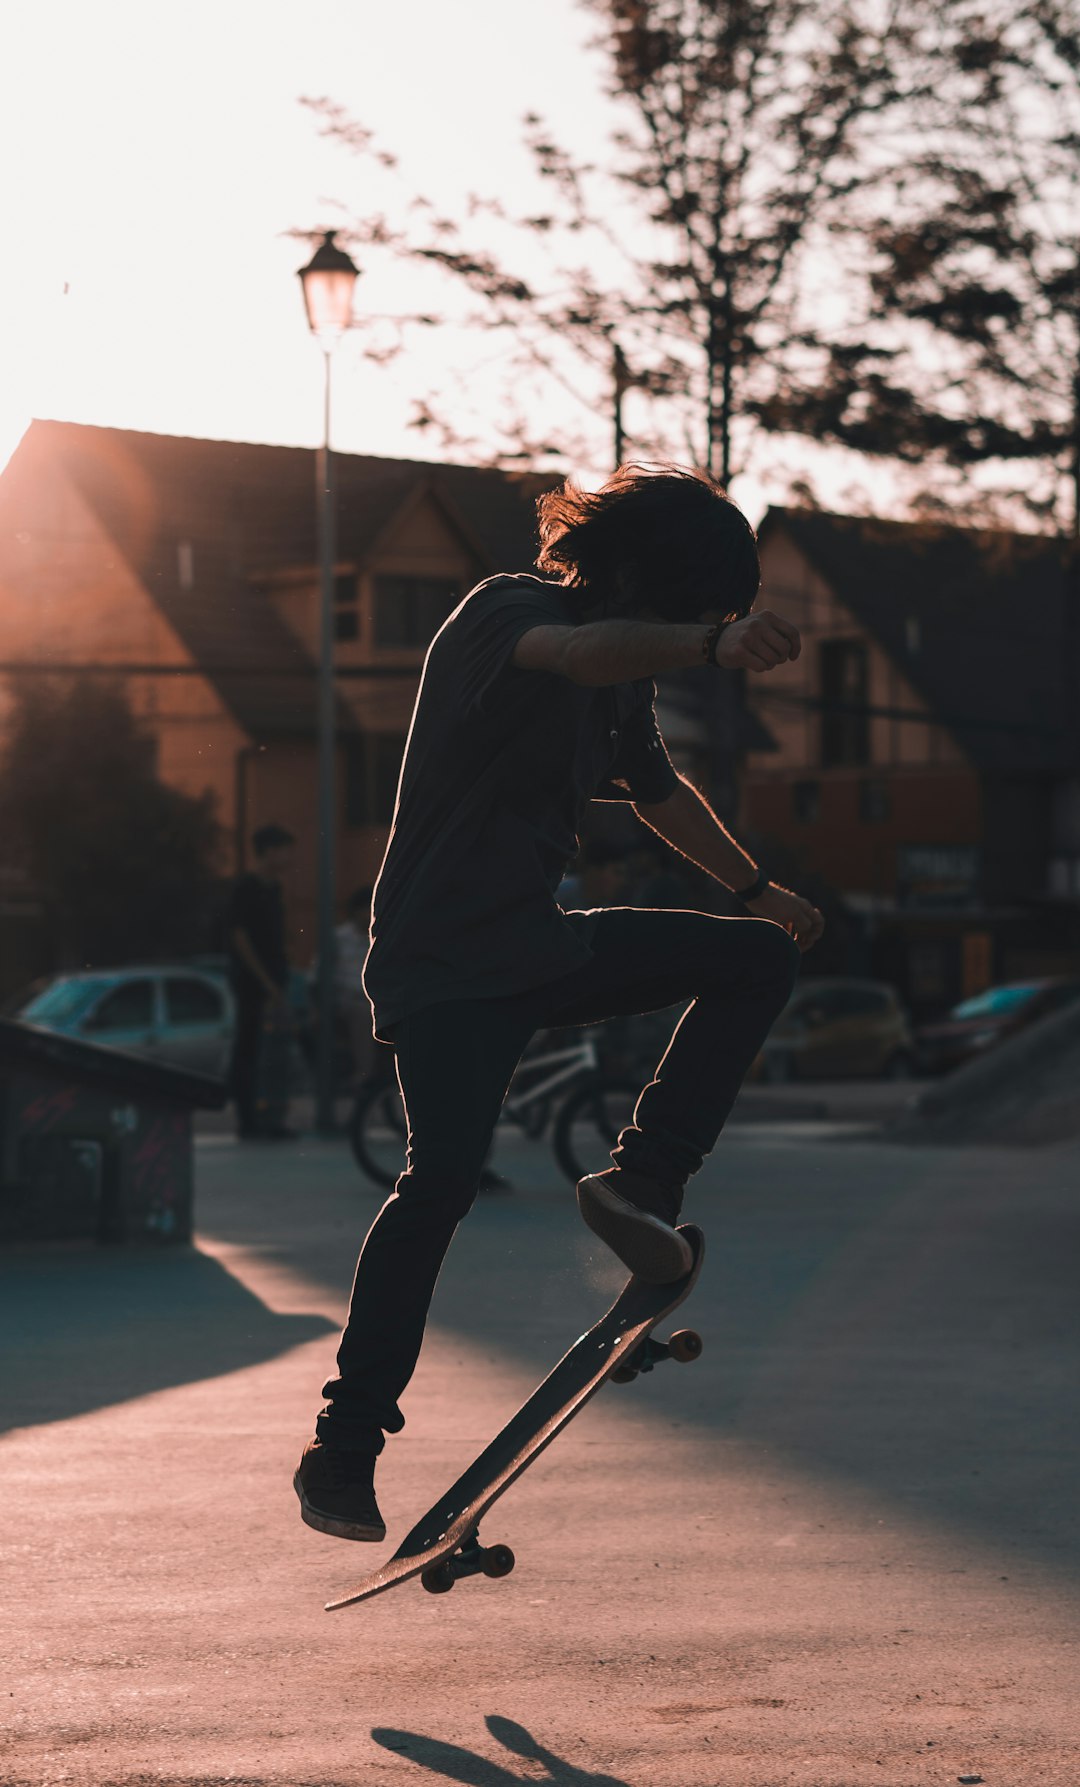 photo of Santiago Skateboarding near Santiago de Chile